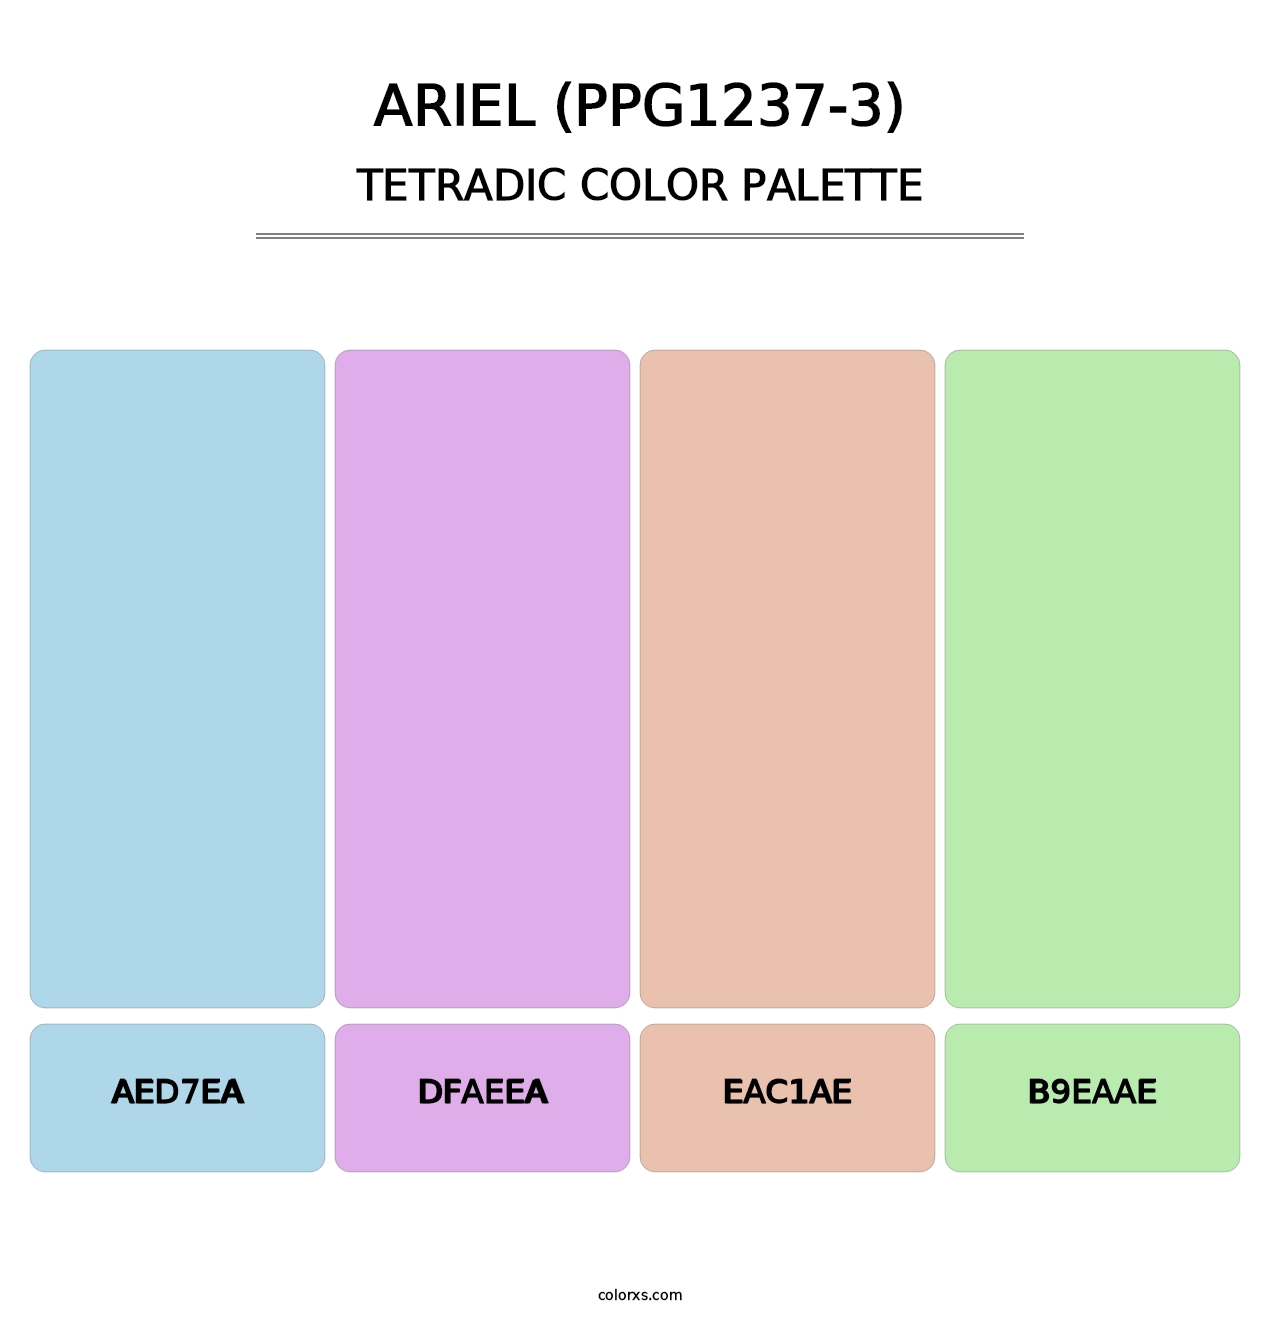 Ariel (PPG1237-3) - Tetradic Color Palette